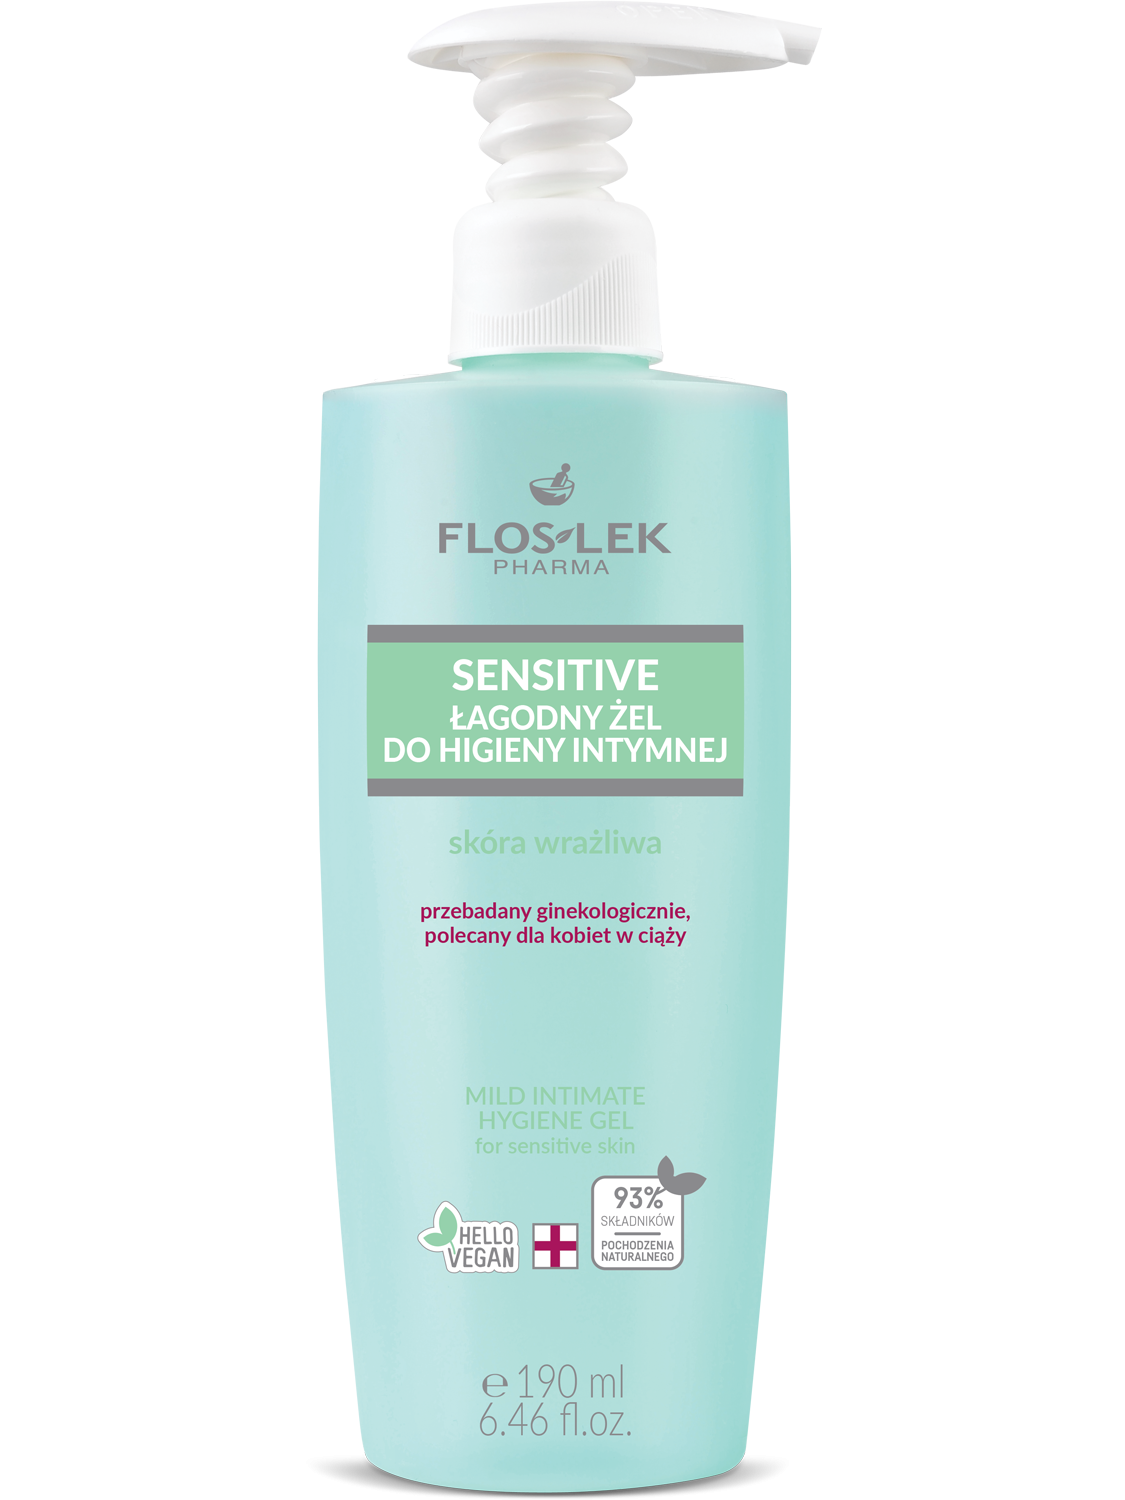 Floslek Gentle intimate hygiene gel for sensitive skin